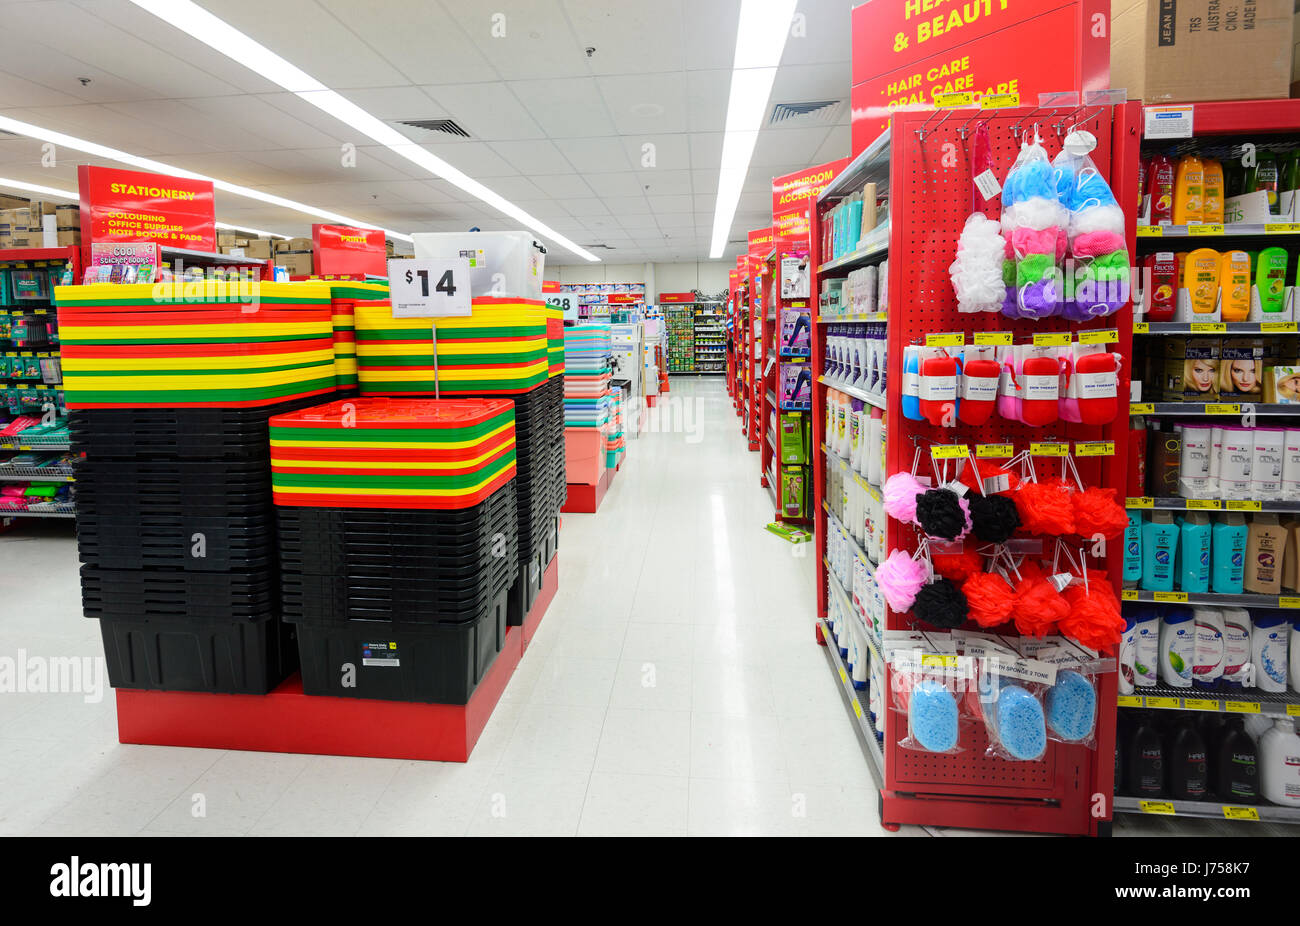 Scatole in plastica e articoli venduti a prezzi scontati presso il negozio di scarto, Kiama, Nuovo Galles del Sud, NSW, Australia Foto Stock